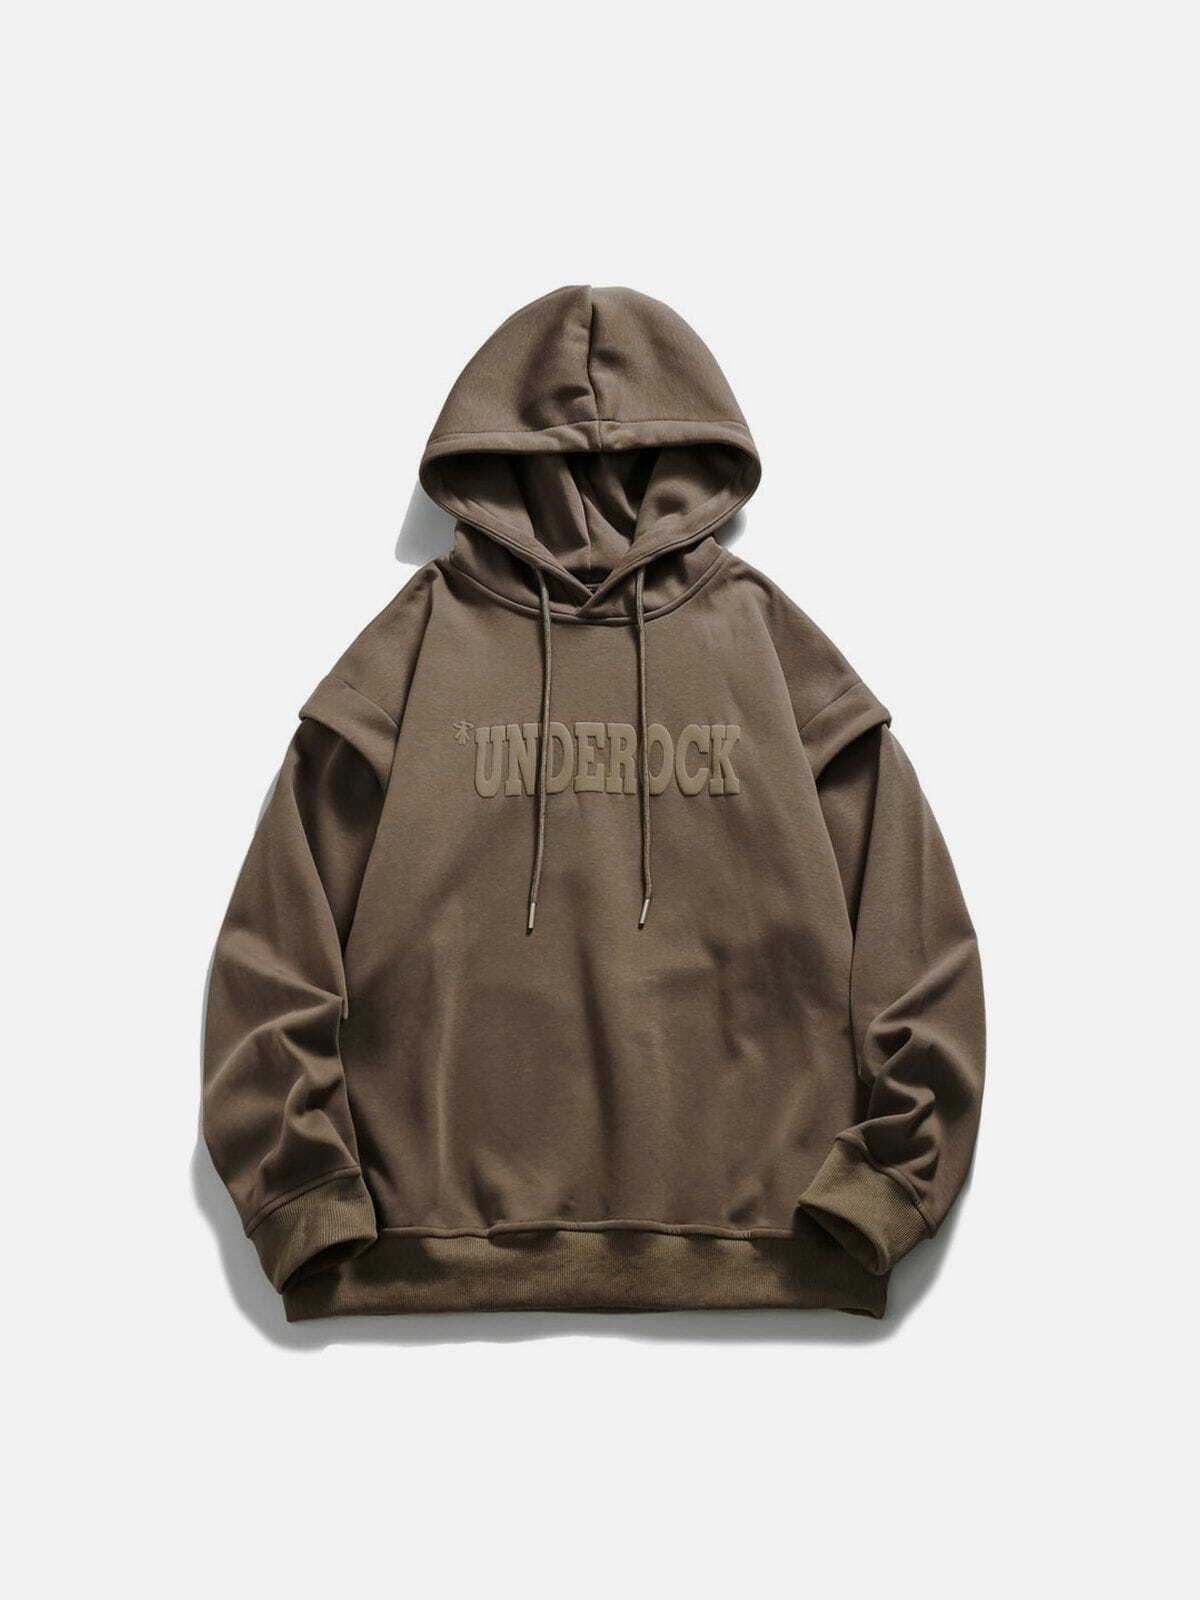 unique 'underock' hoodie edgy streetwear essential 1255